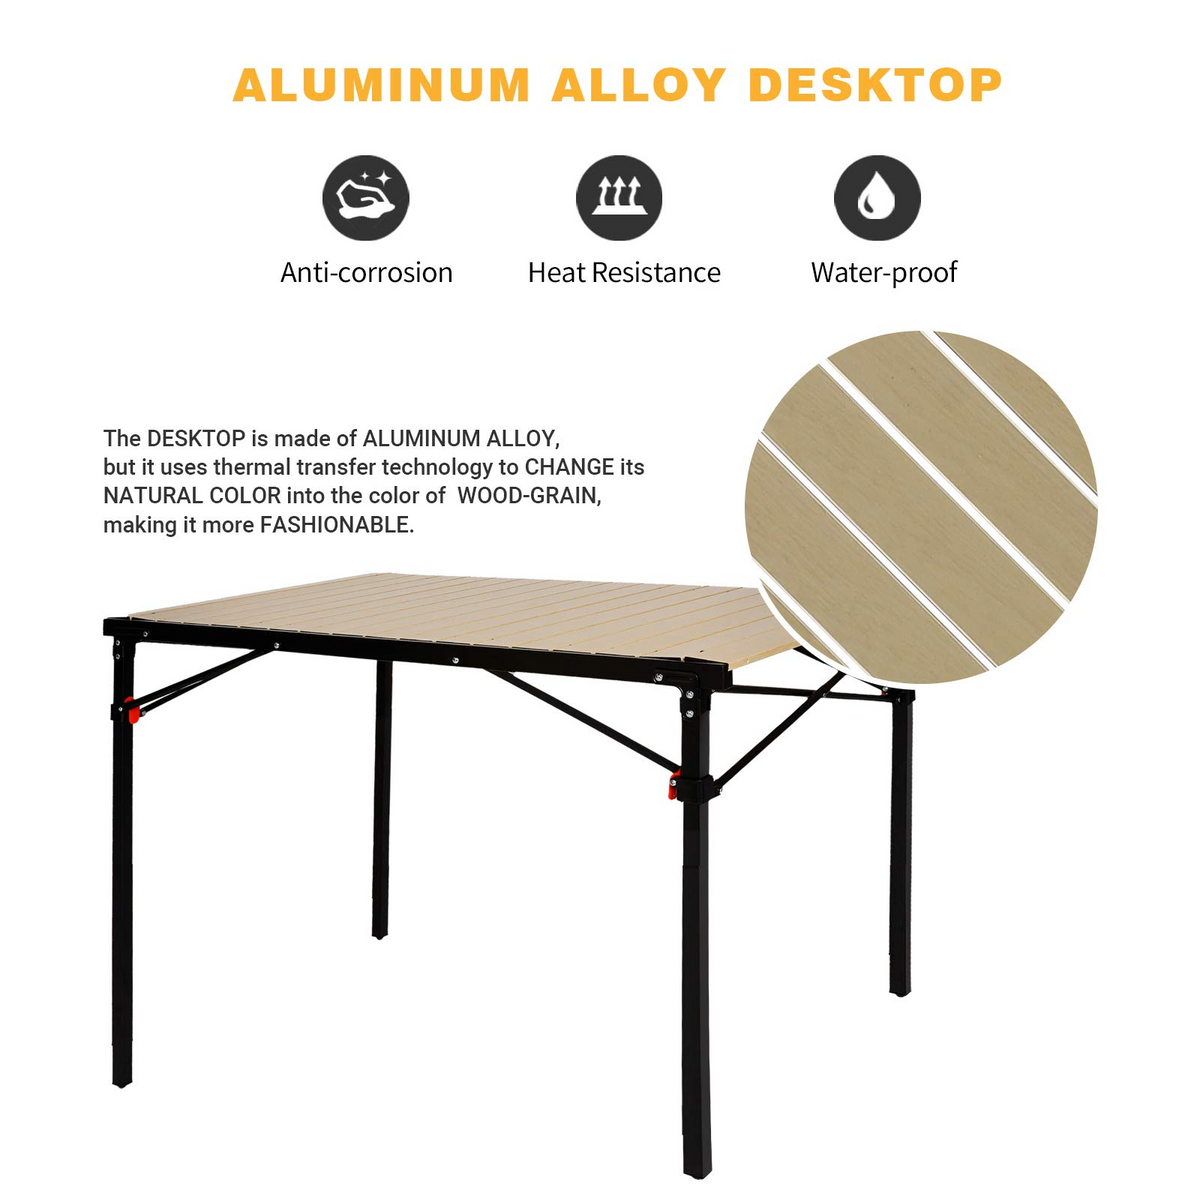 Table Camping Pliable En Aluminium Avec Chaise Portable - SOUMARI